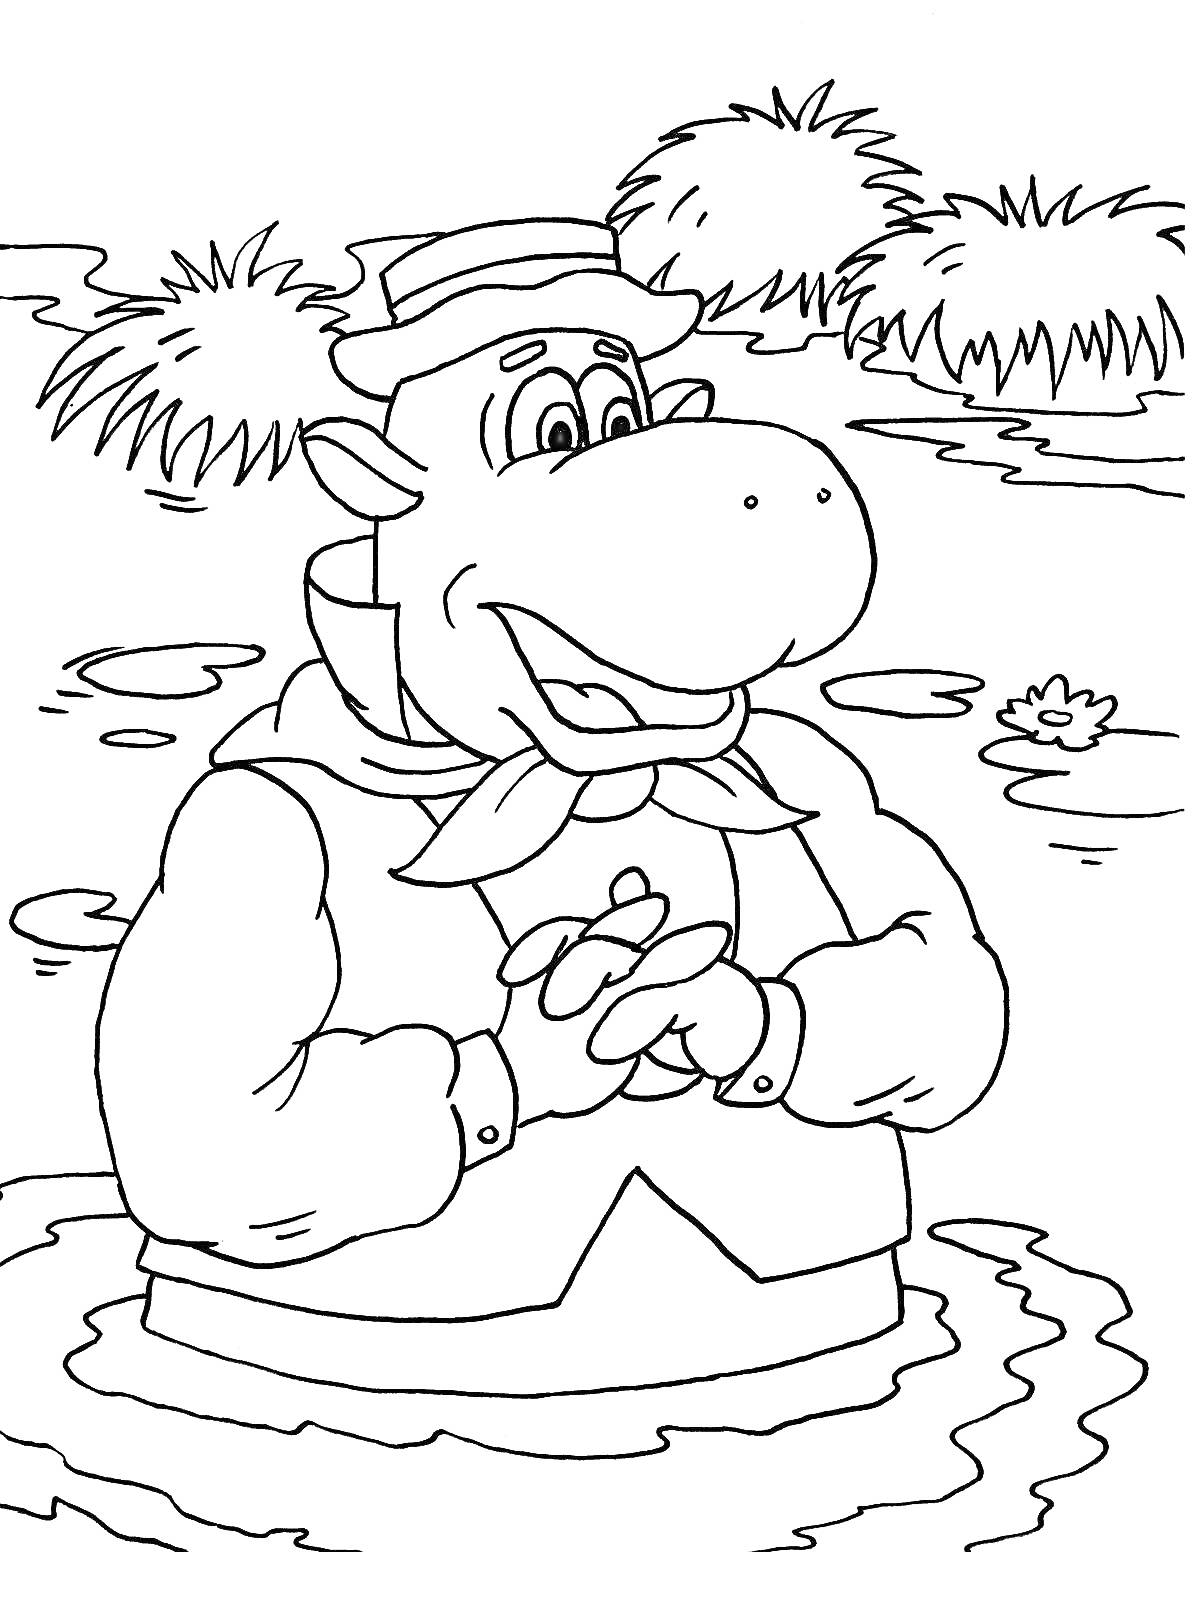 Раскраска персонаж в шляпе и одежде стоит в воде среди камышей